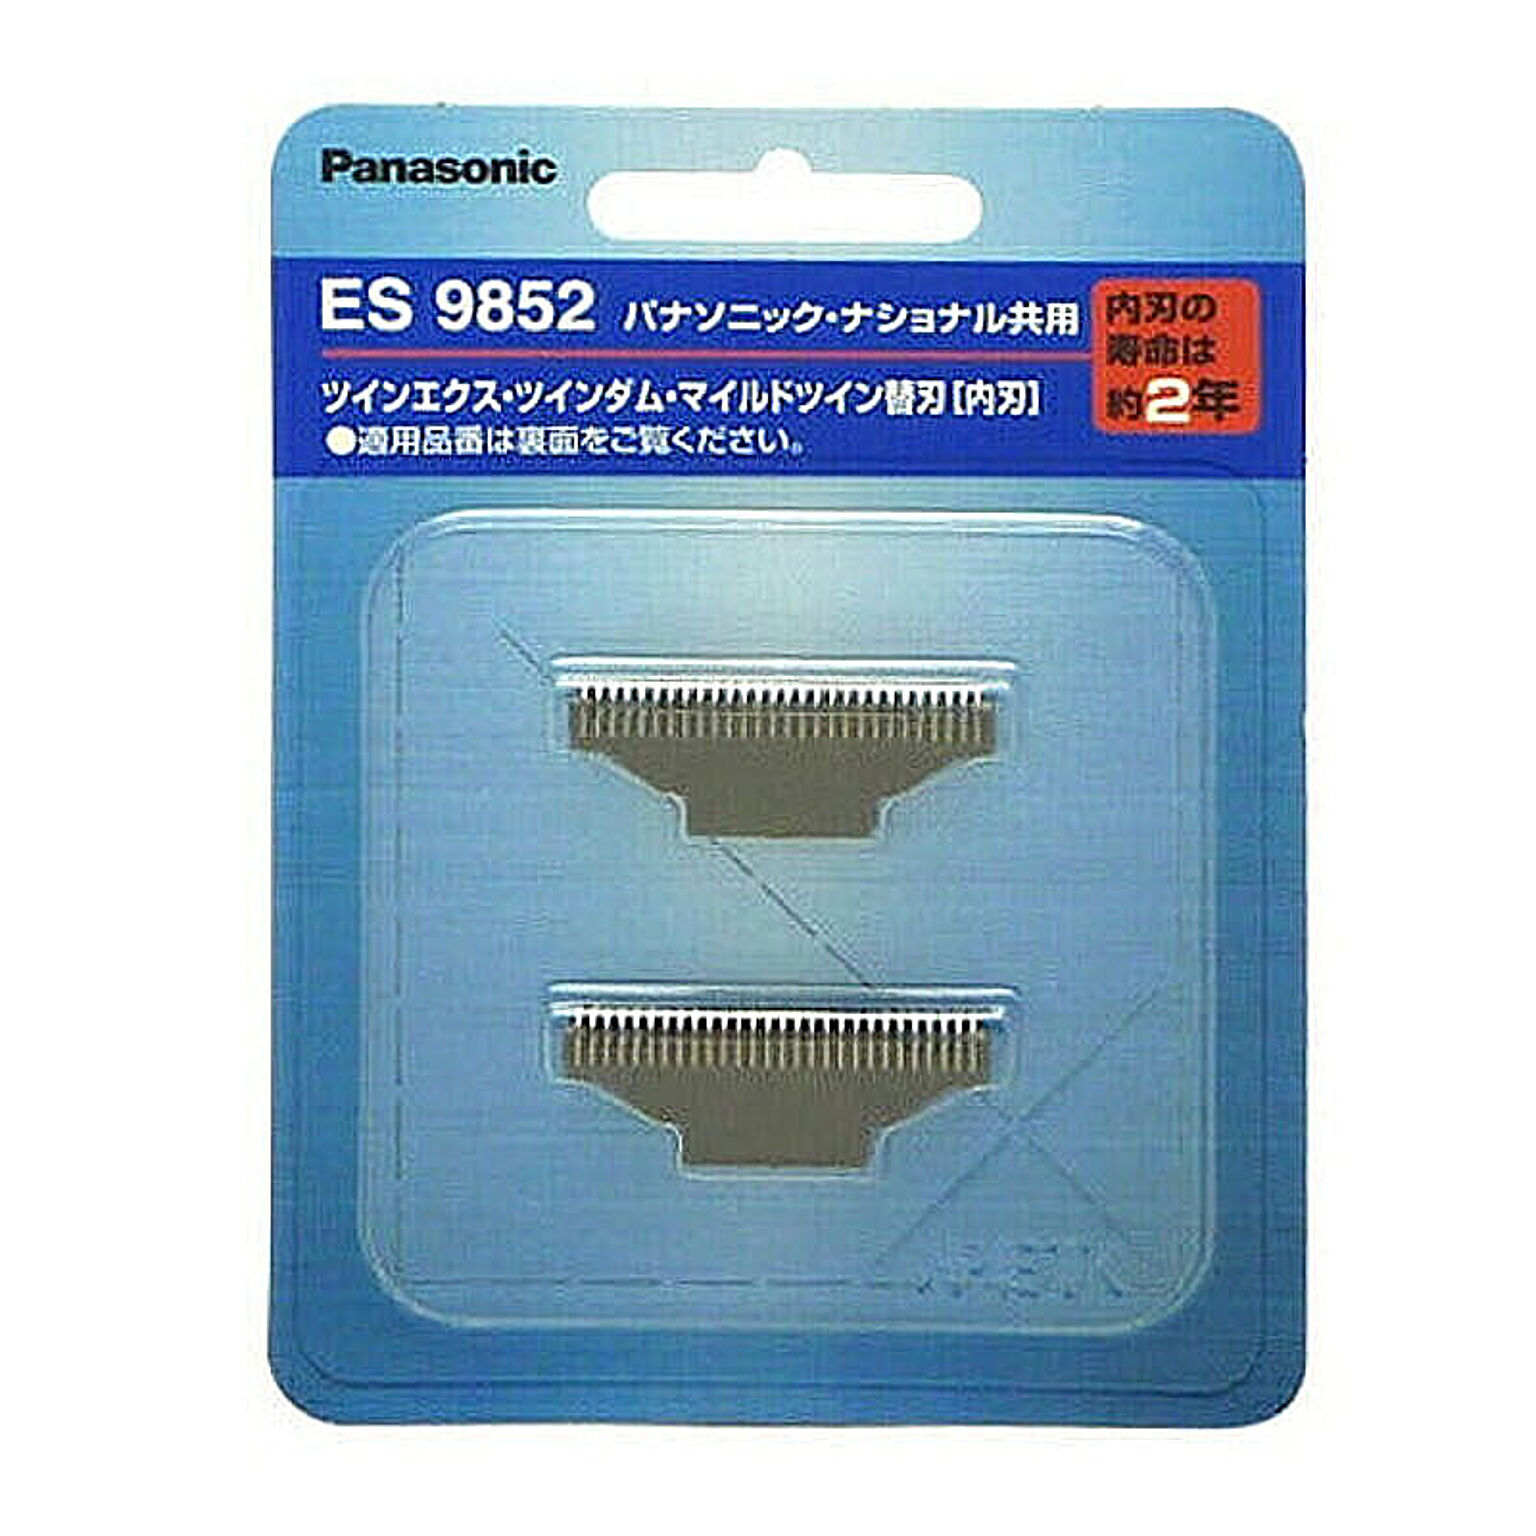 パナソニック Panasonic シェーバー替え刃 ES9852 管理No. 4989602527596